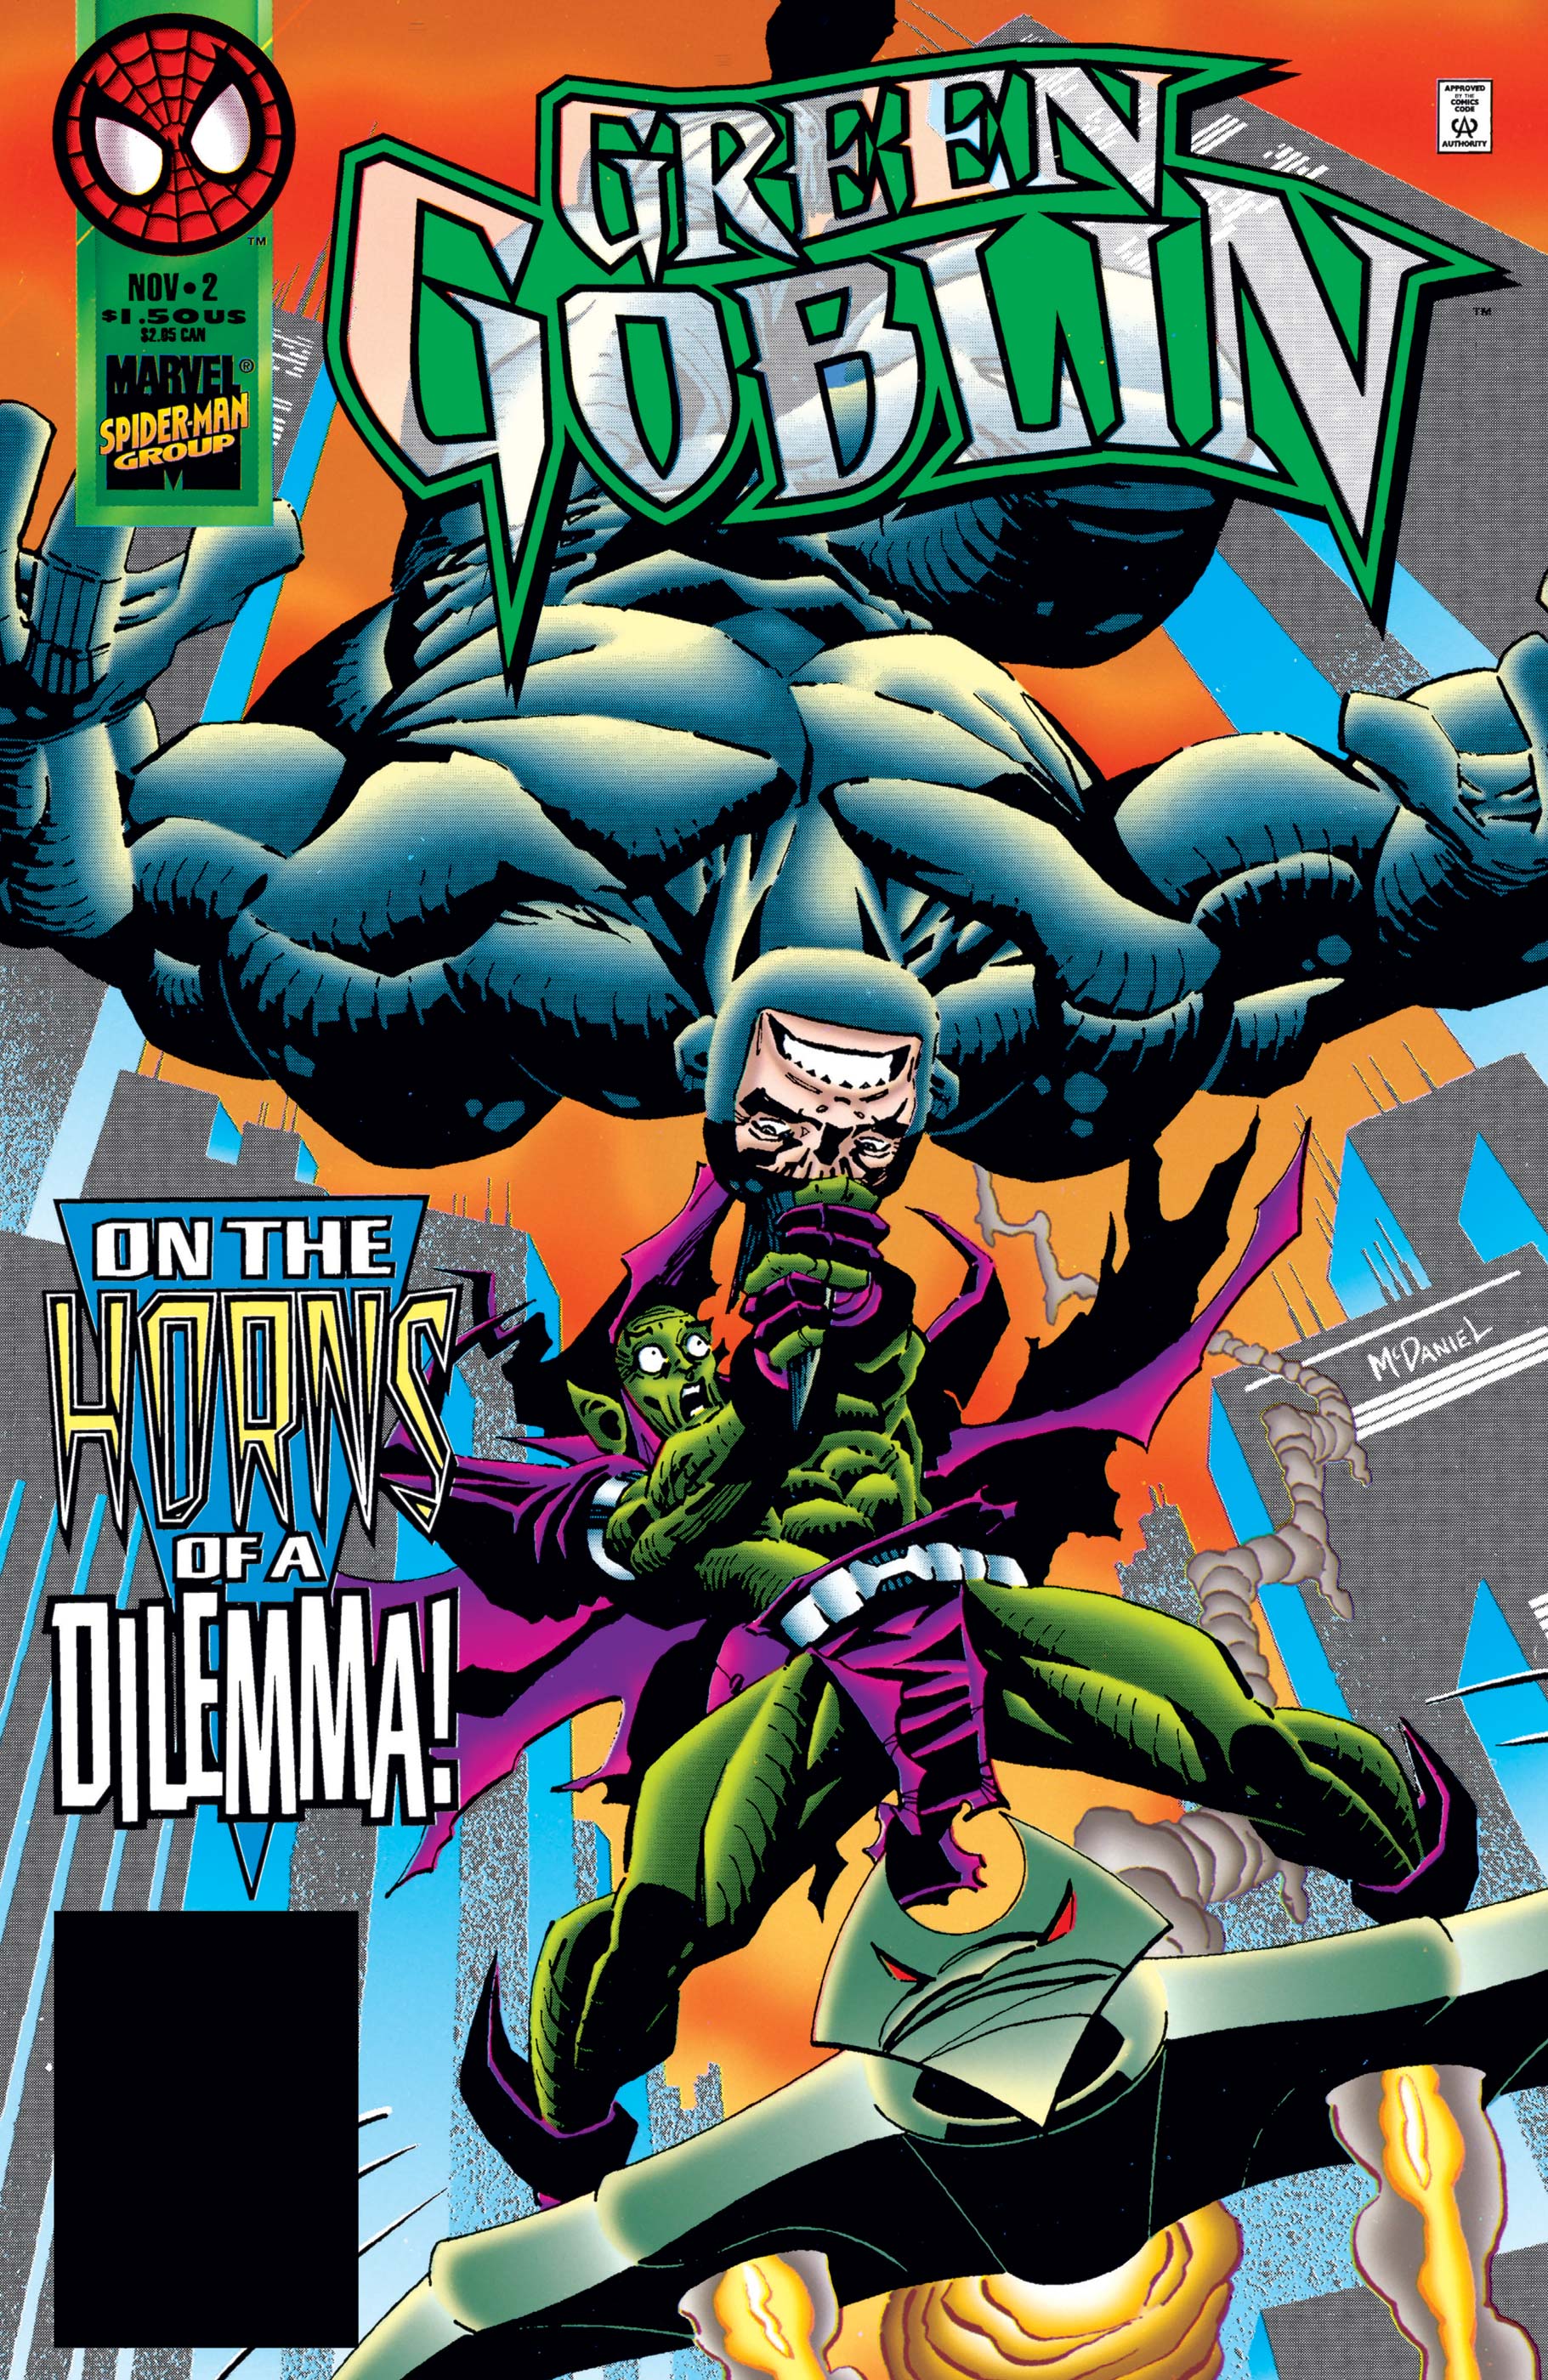 Comic book green goblin